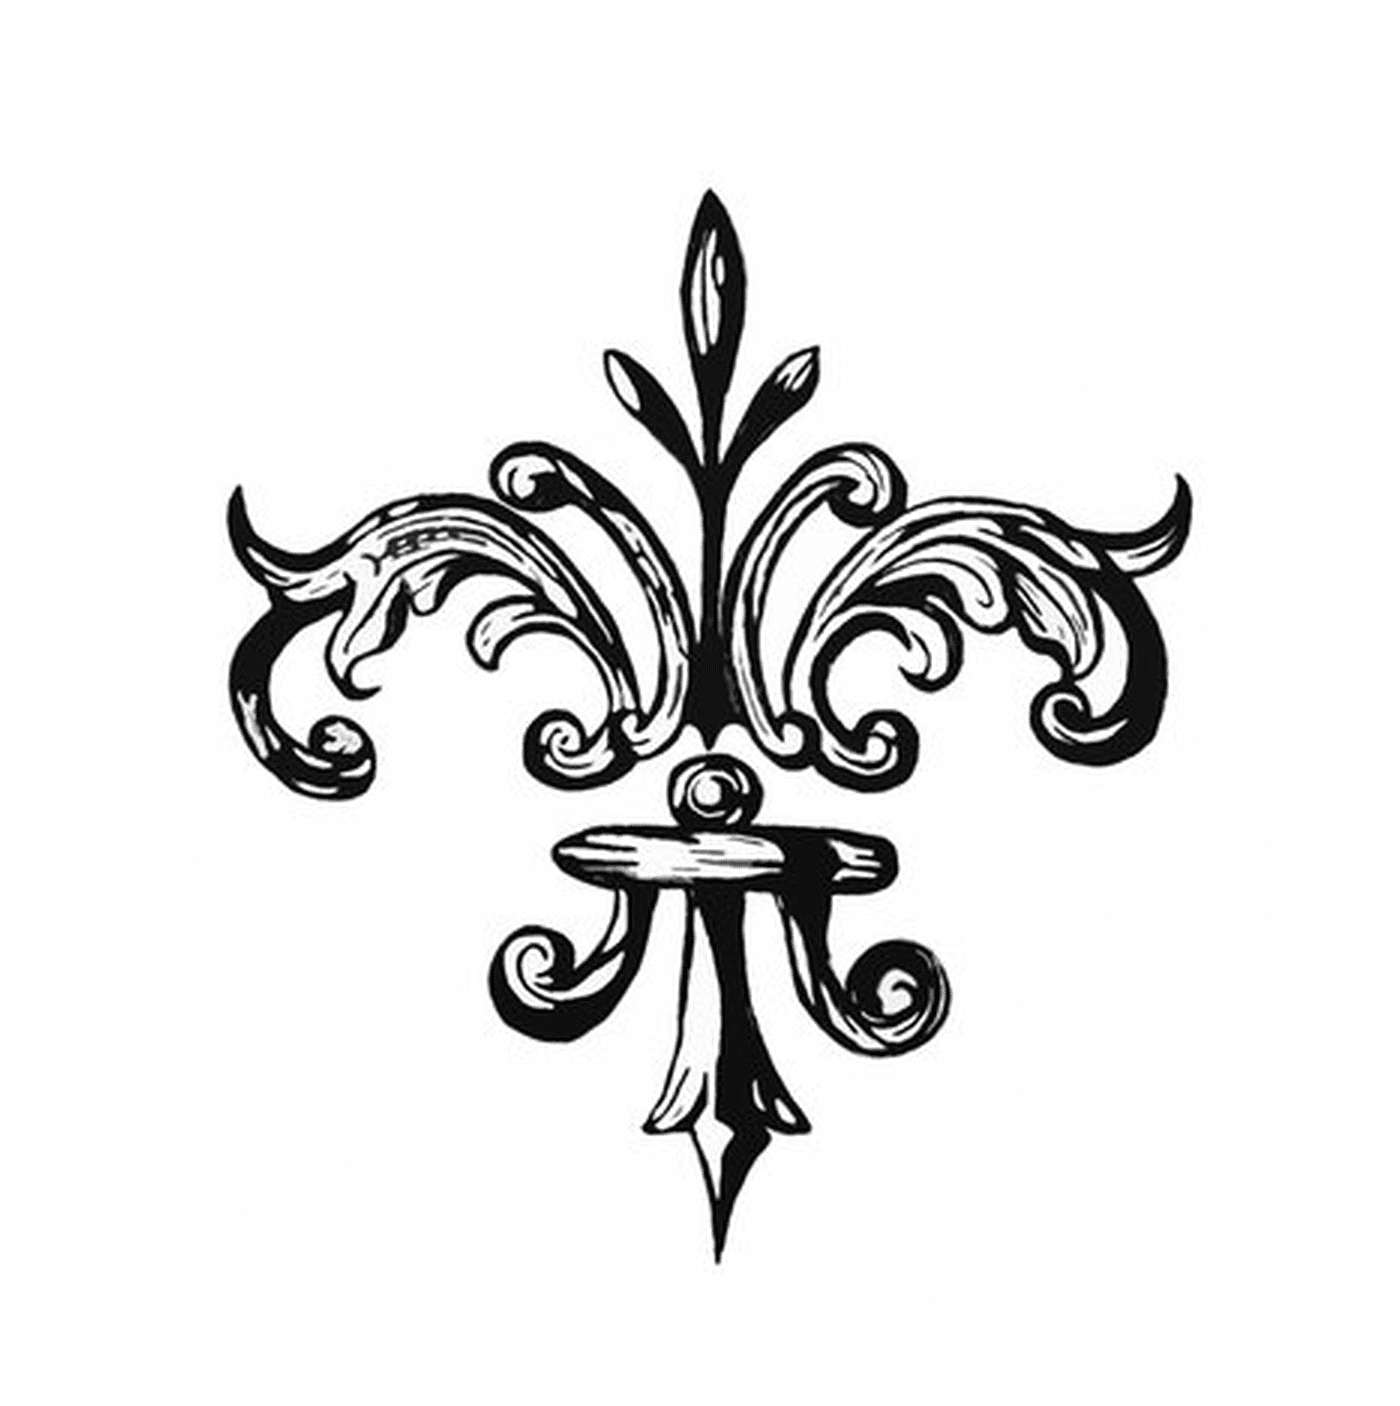   Un design noir et blanc orné de fleurs de lys 